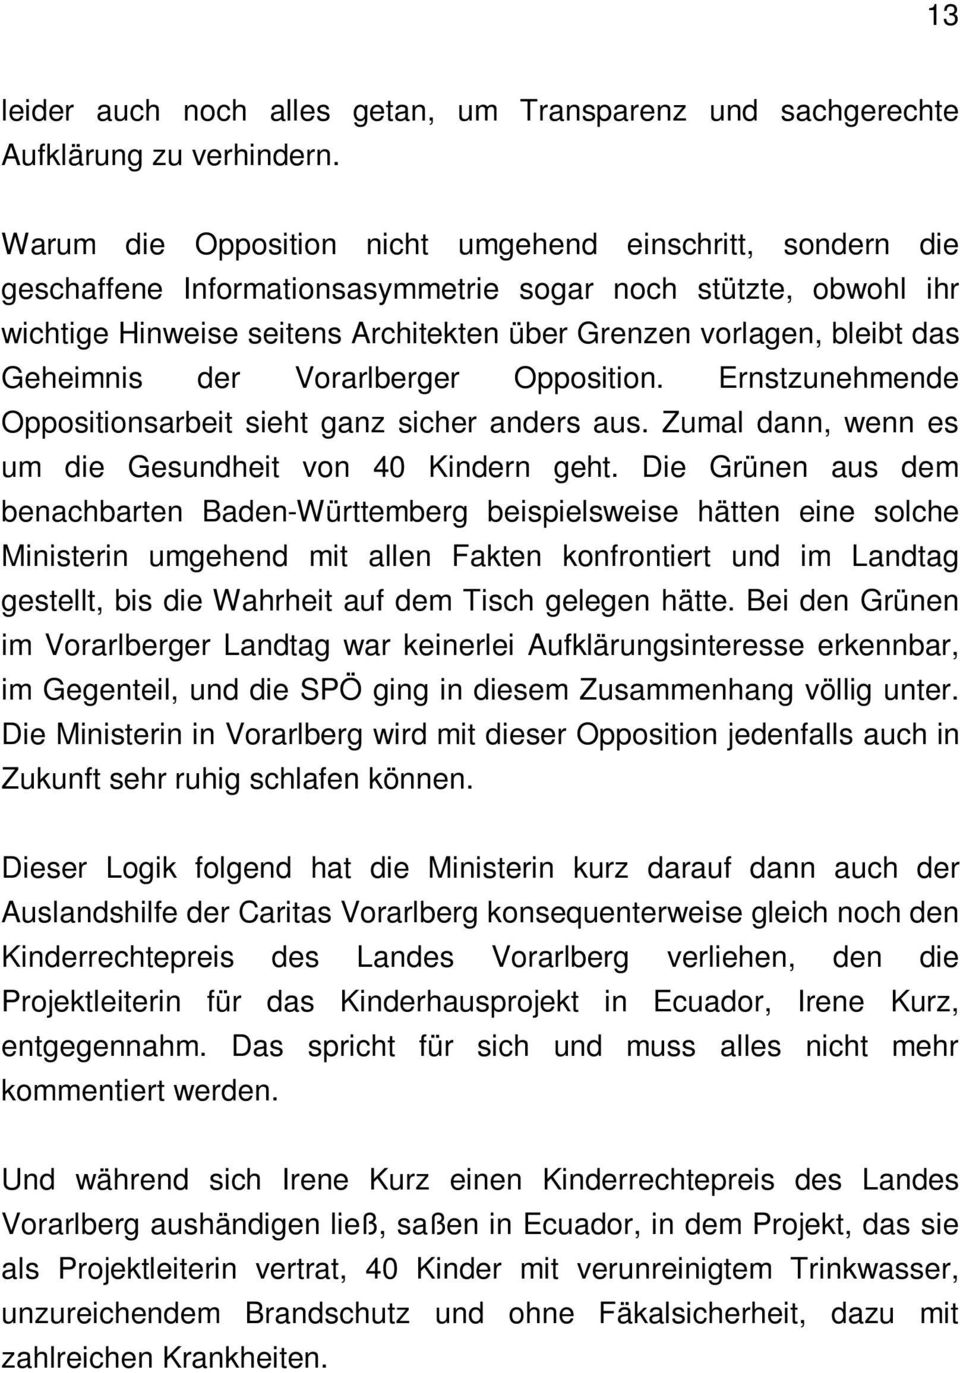 Geheimnis der Vorarlberger Opposition. Ernstzunehmende Oppositionsarbeit sieht ganz sicher anders aus. Zumal dann, wenn es um die Gesundheit von 40 Kindern geht.